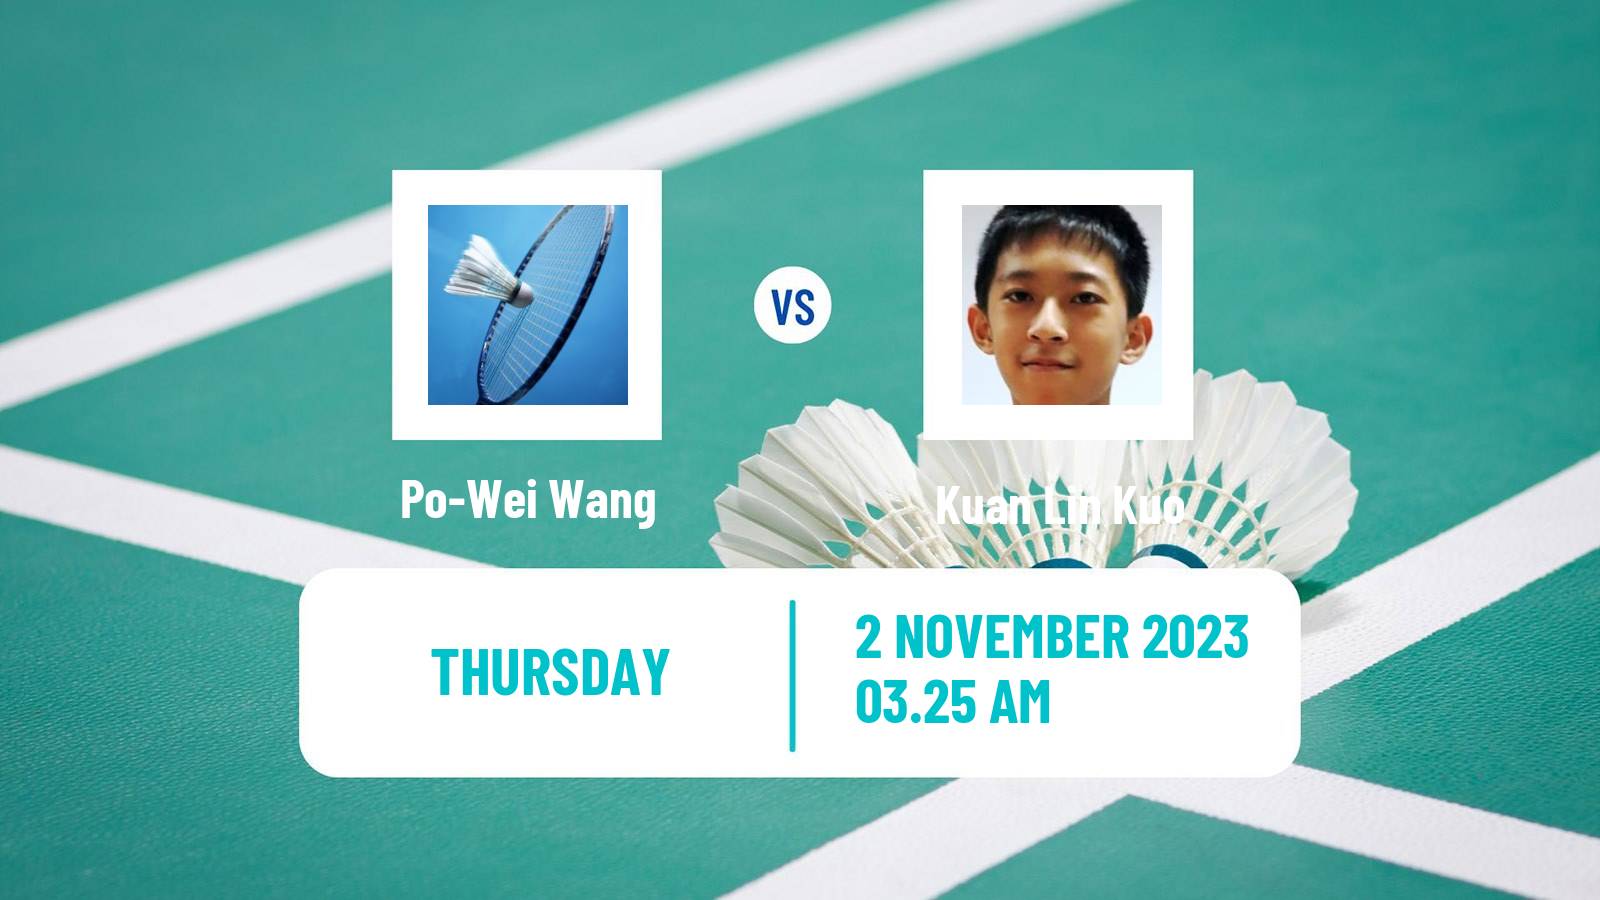 Badminton BWF World Tour Kl Masters Malaysia Super 100 Men Po-Wei Wang - Kuan Lin Kuo